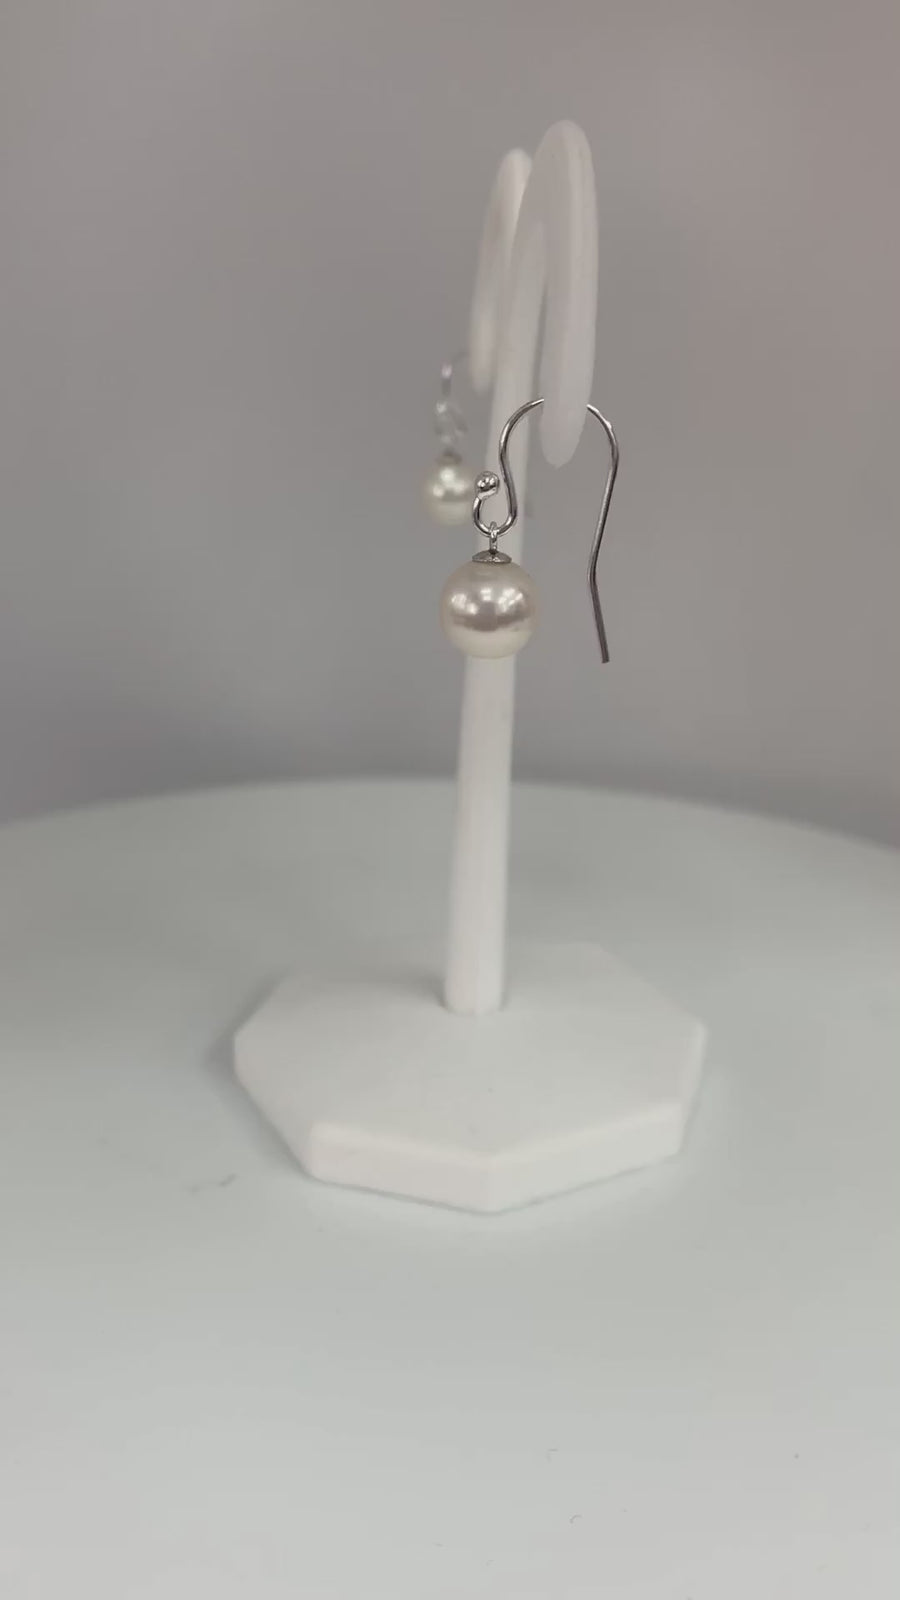 Real Freshwater Pearl Drop Earrings 7mm-8mm, 925 Sterling Silver Wire Hook Dangle Earrings